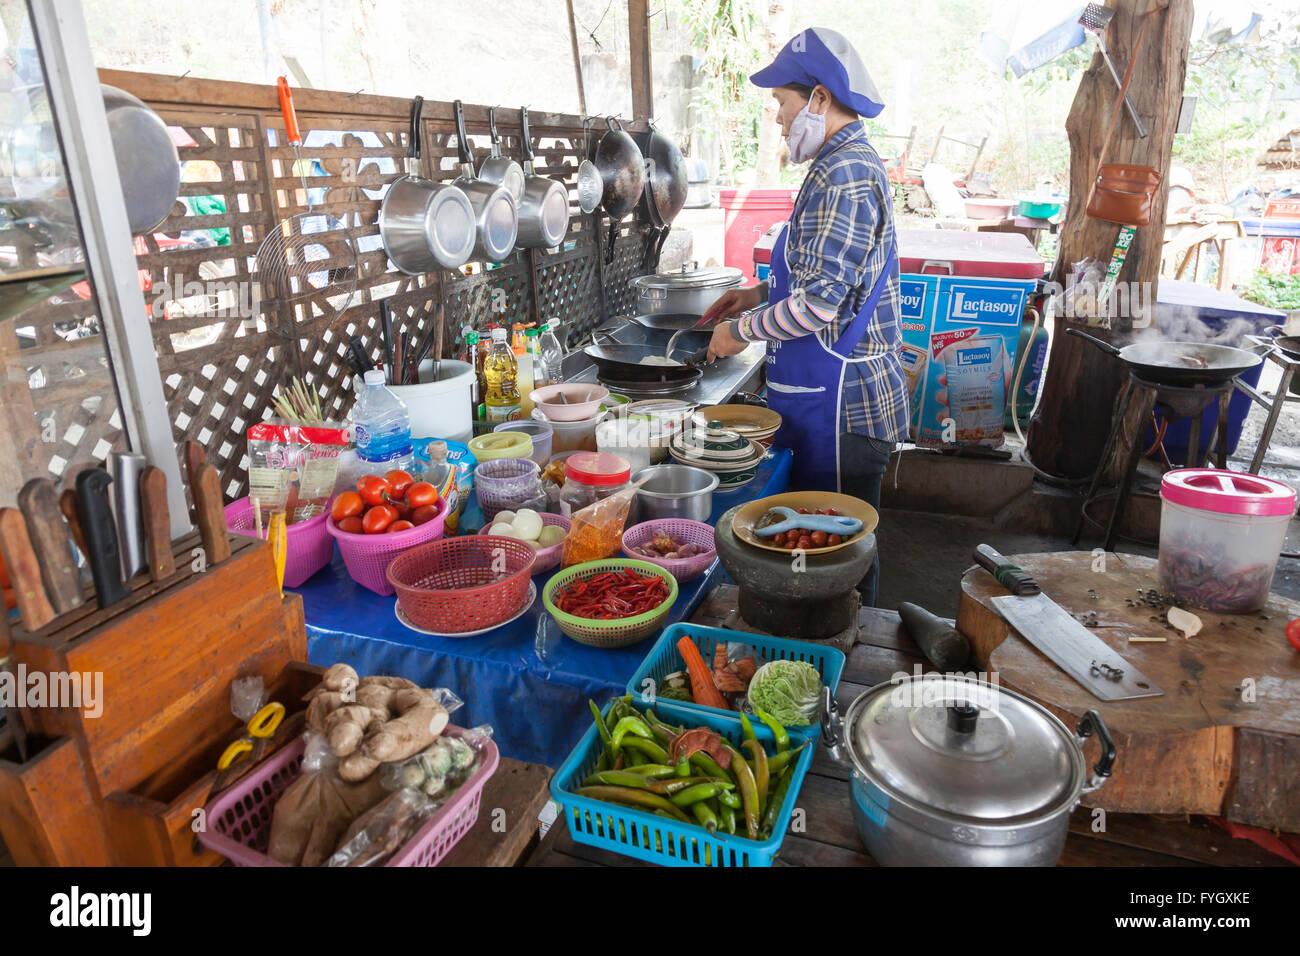 Cucina di strada alla frutta e verdura in vendita in un mercato di strada in Myanmar (Birmania) Foto Stock